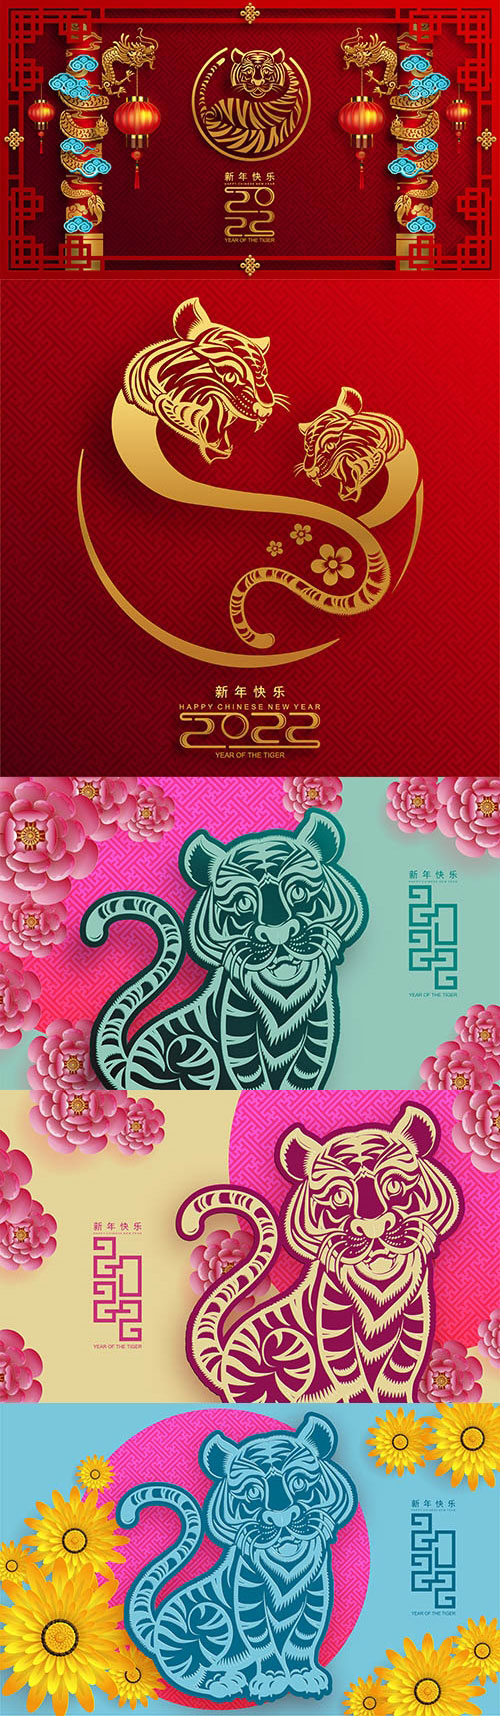 农历,虎年,2022,新年,春节,边框,古典,传统,剪纸,金色,红色,红灯笼